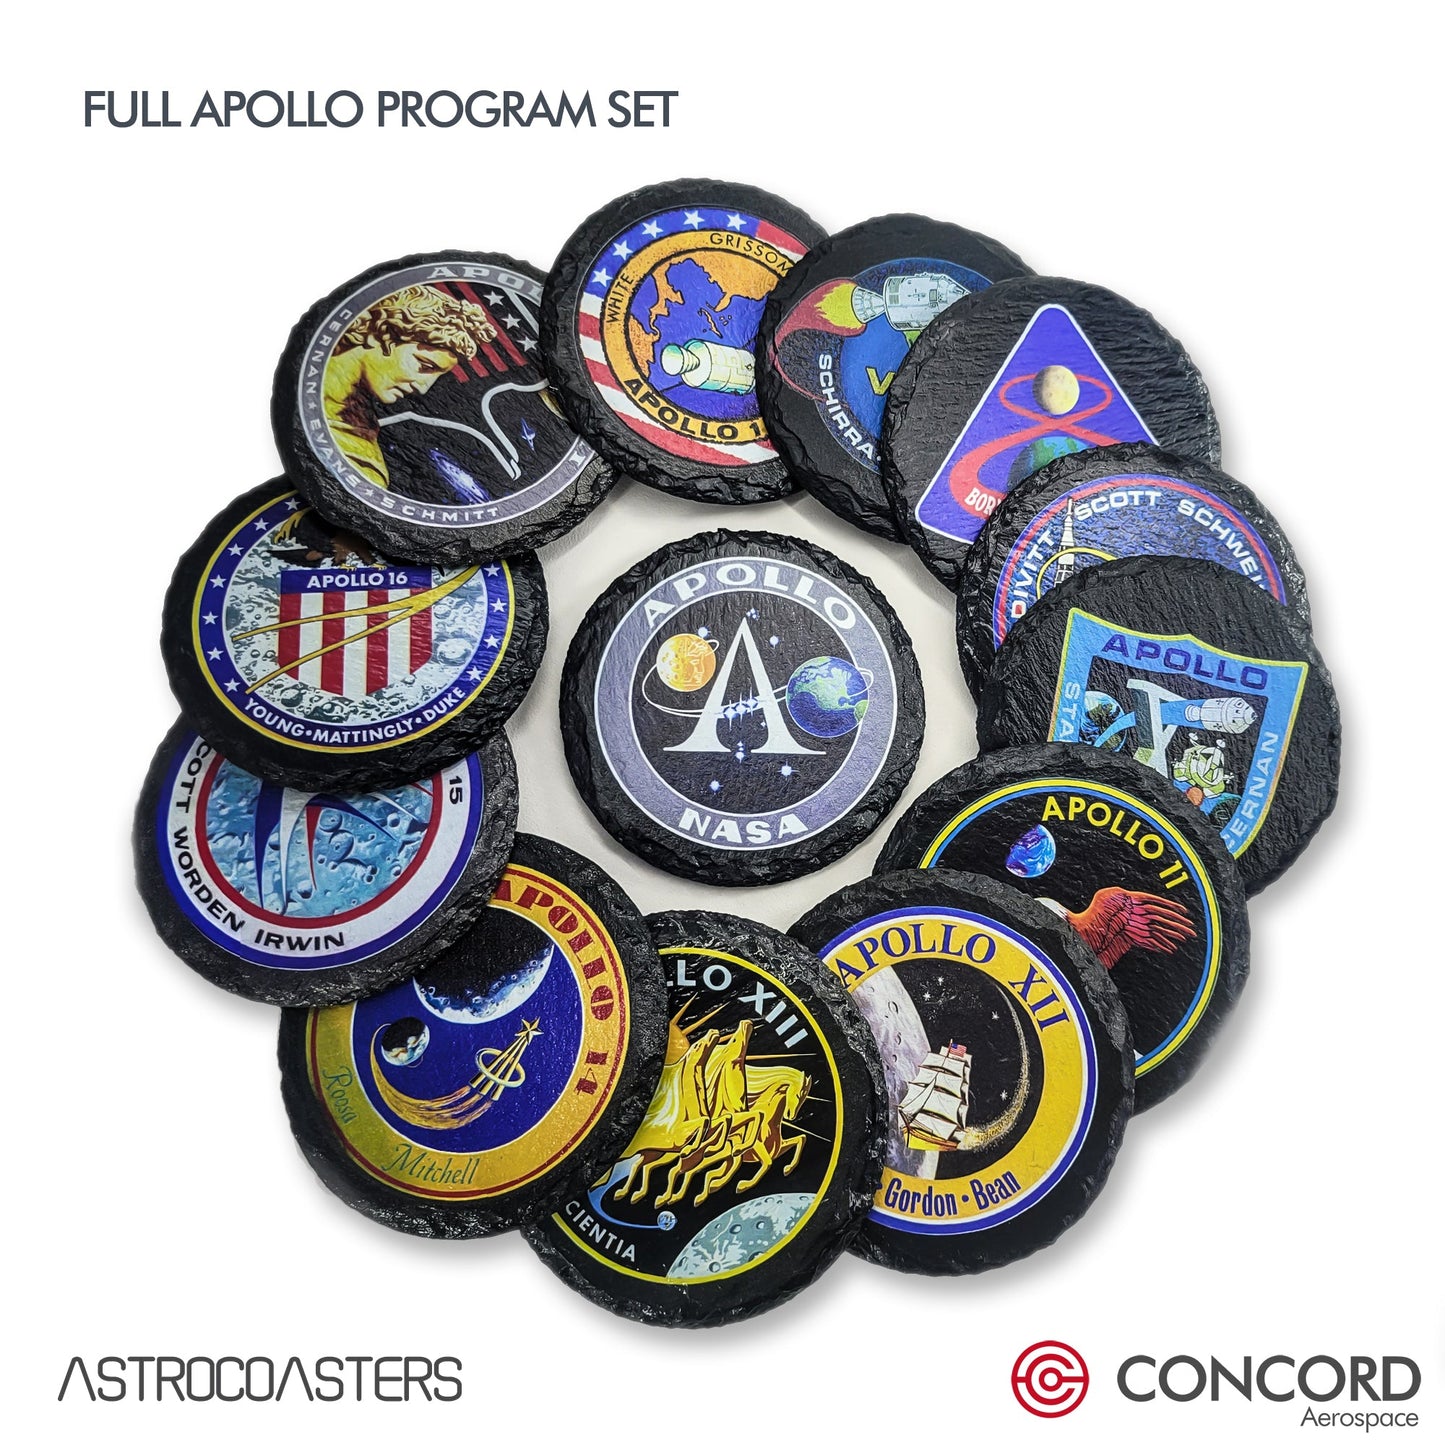 APOLLO FULL PROGRAM - 13 SLATE COASTERS SET - Concord Aerospace Concord Aerospace Concord Aerospace Coasters